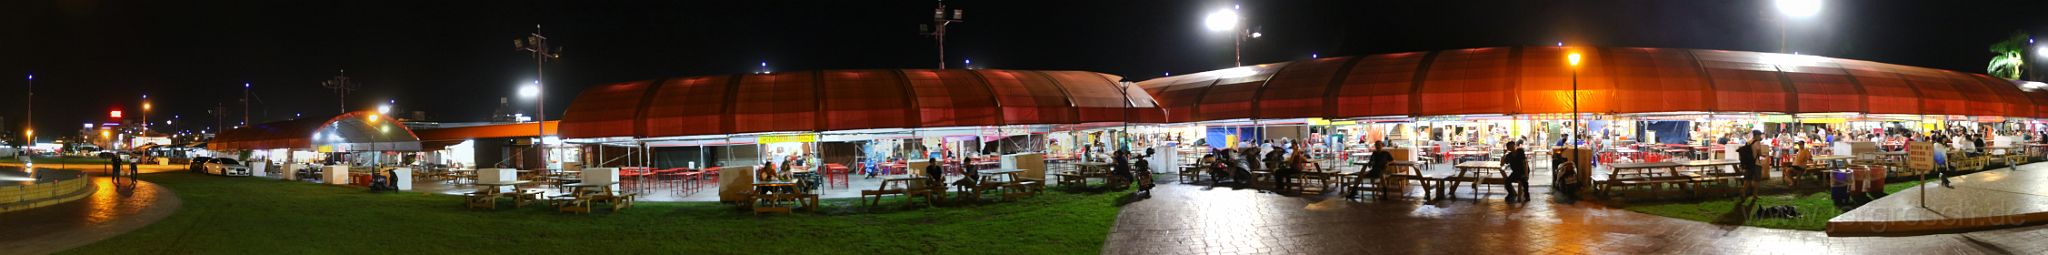 20170914-nachtmarkt.jpg - Nachtmarkt